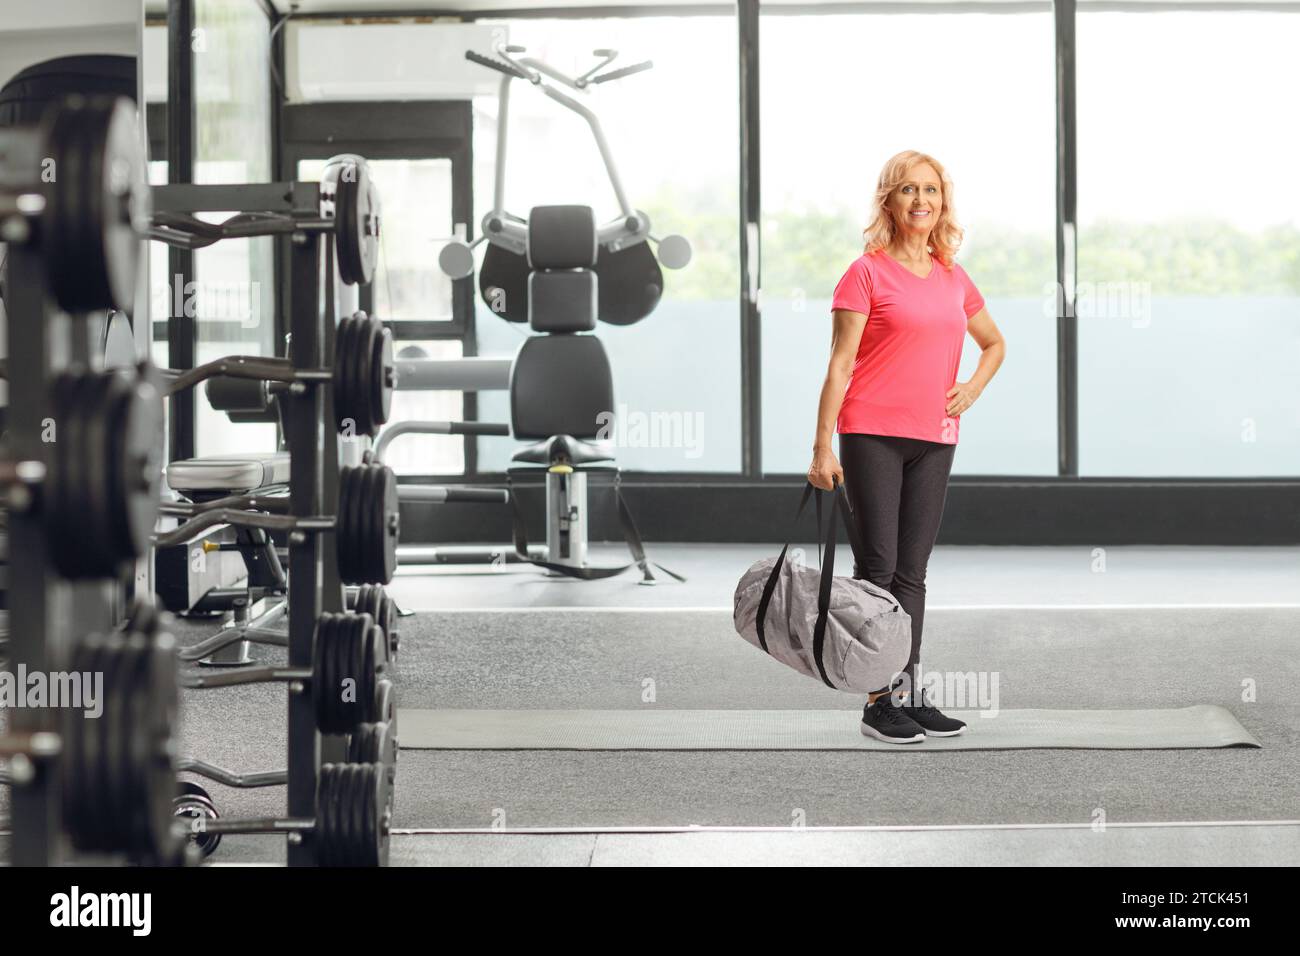 Lächelnde reife Frau in Sportbekleidung, die eine Sporttasche in einem Fitnesscenter hält Stockfoto